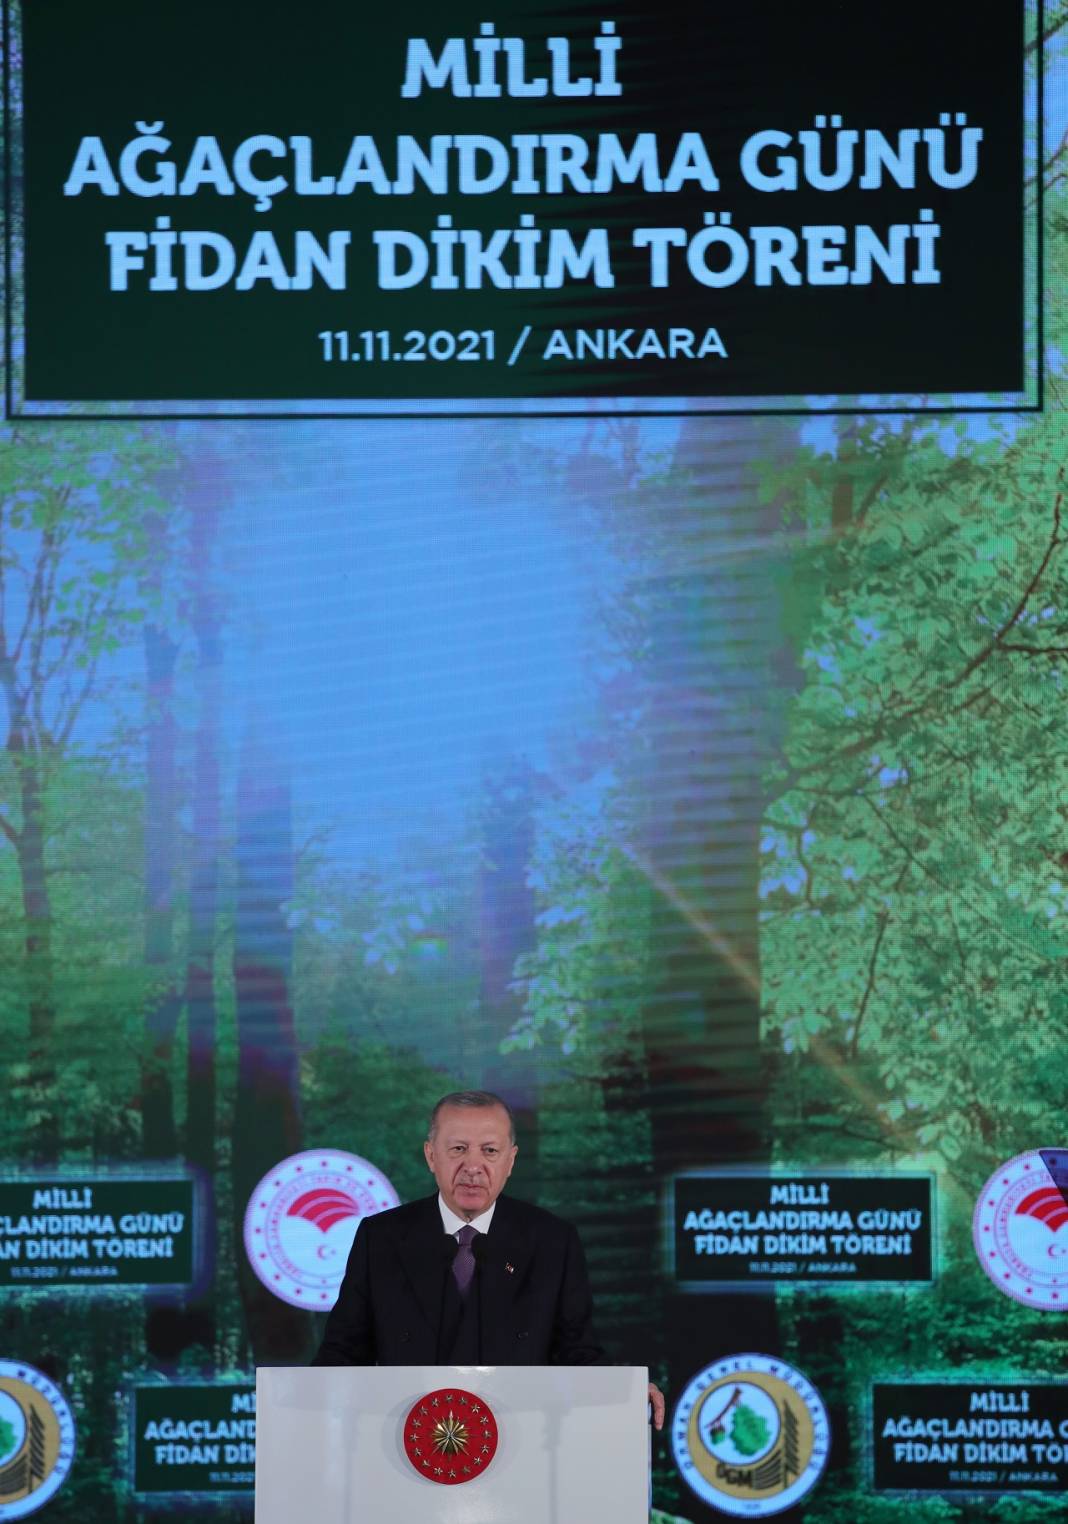 Türkiye Cumhurbaşkanı Recep Tayyip Erdoğan Milli Ağaçlandırma Günü Fidan Dikim Töreni’ne katıldı 9